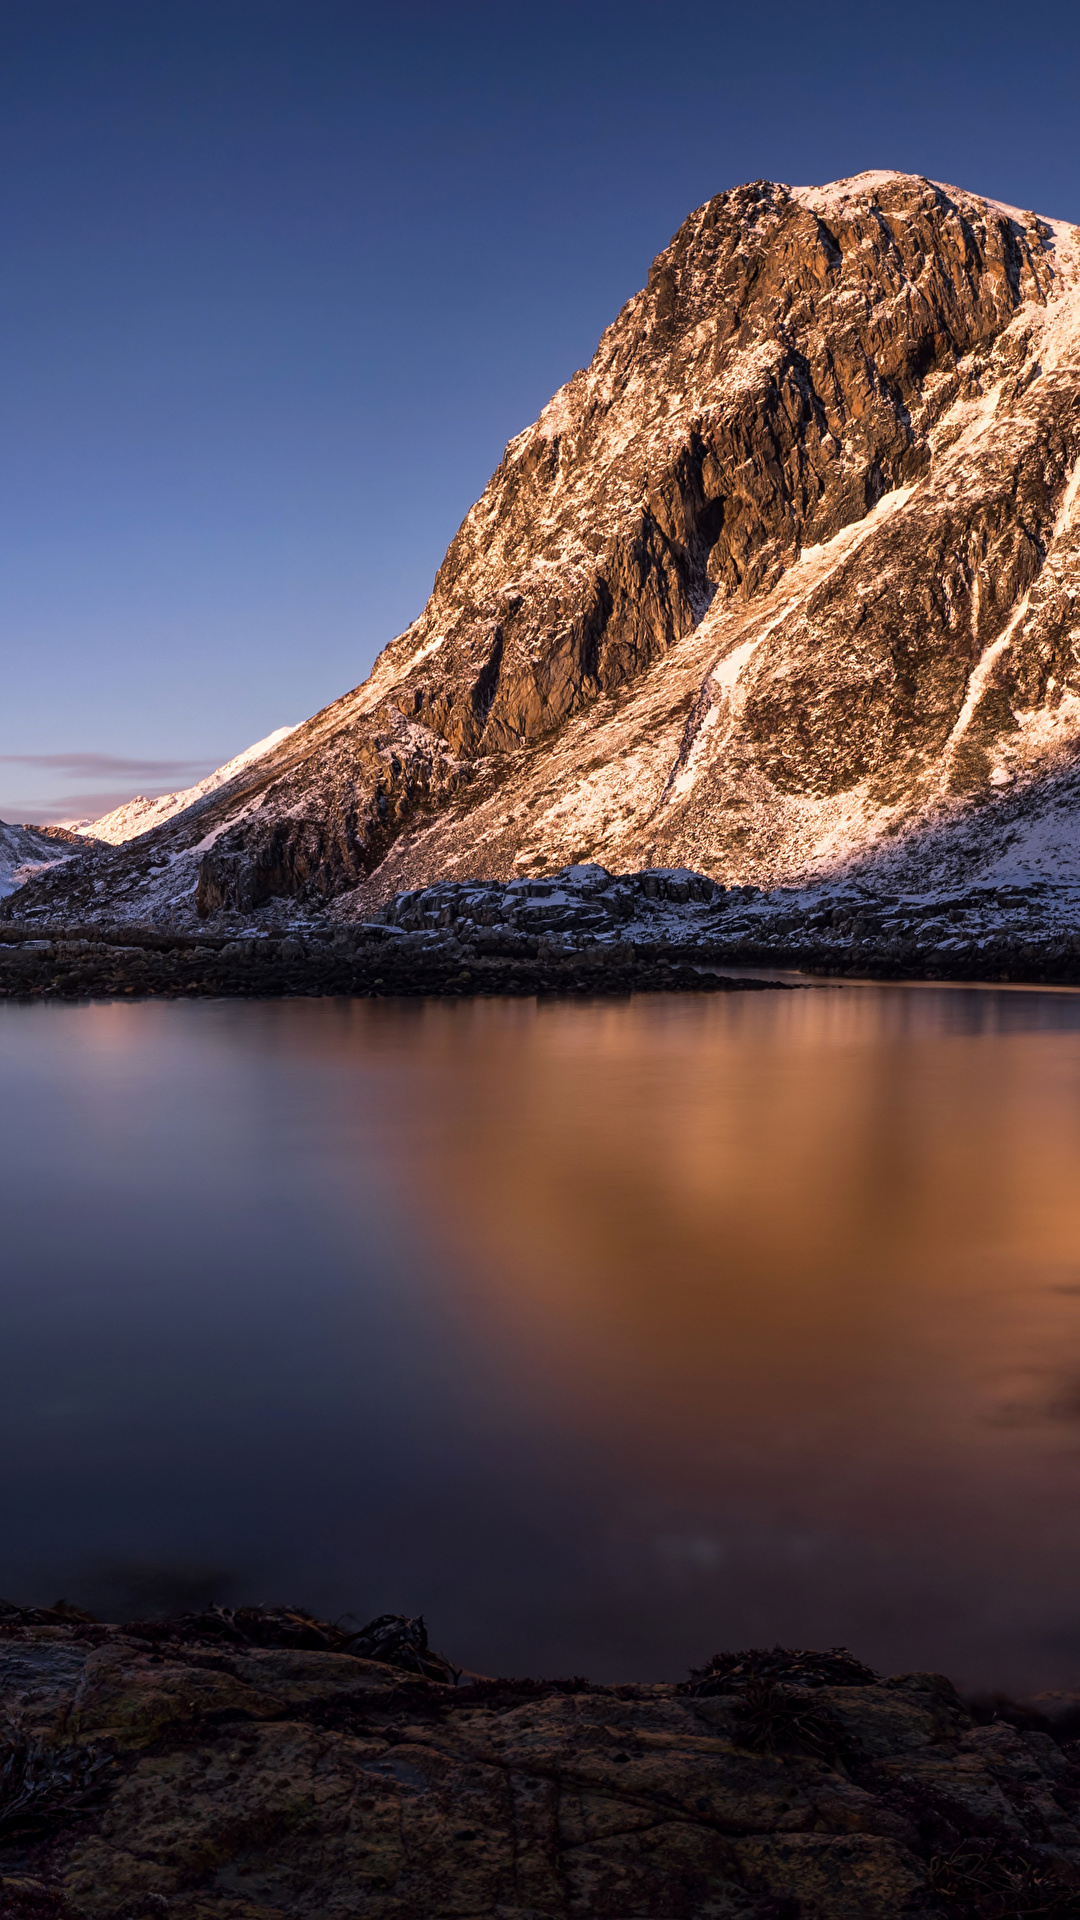 壁紙 1080x19 ロフォーテン諸島 ノルウェー 風景写真 山 川 雪 自然 ダウンロード 写真